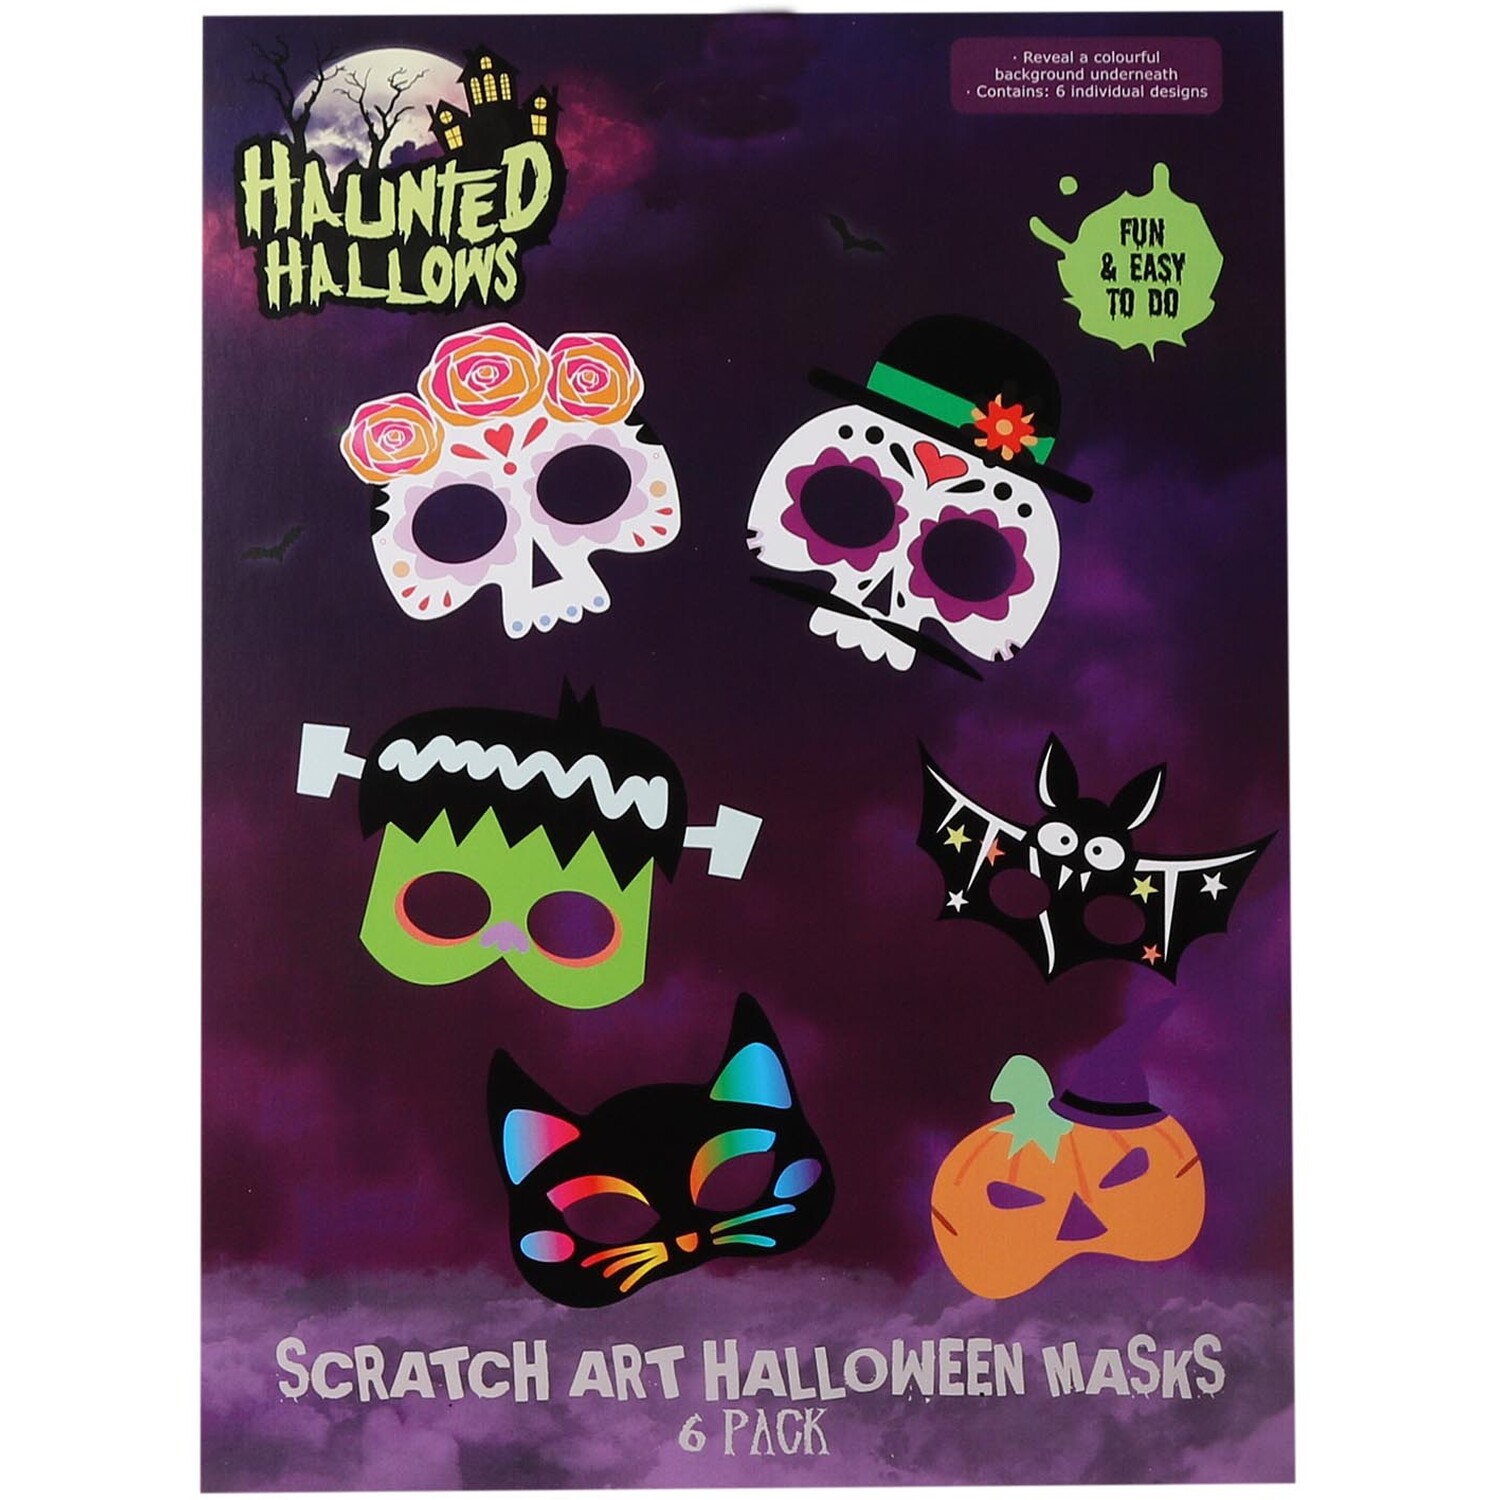 Scratch Art Halloween Masks Image